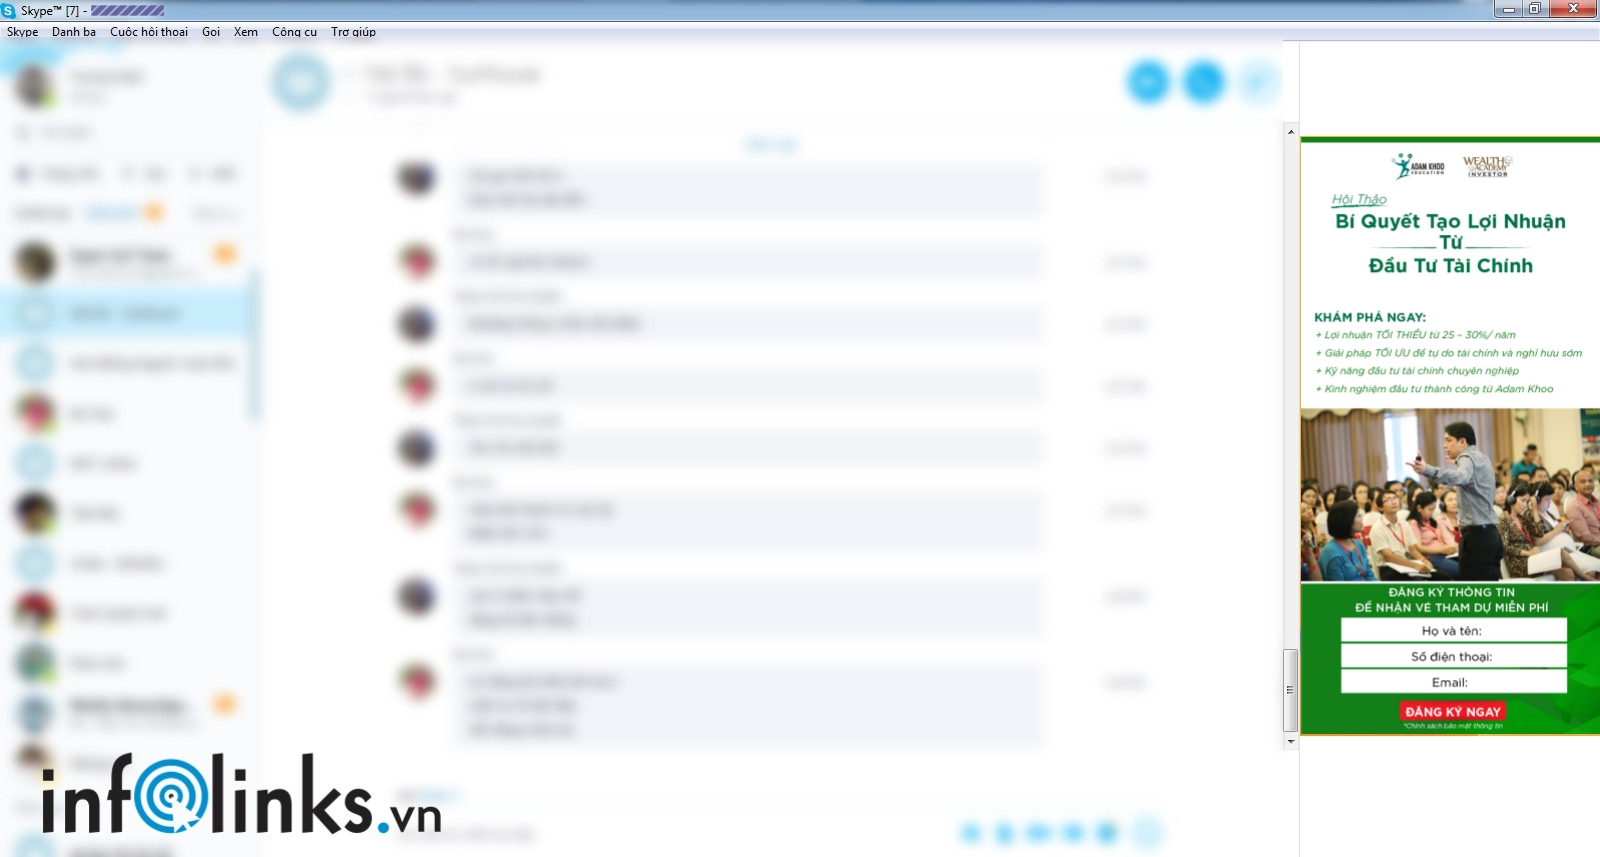 Quảng cáo Skype của Adam Khoo Education do Infolinks thực hiện